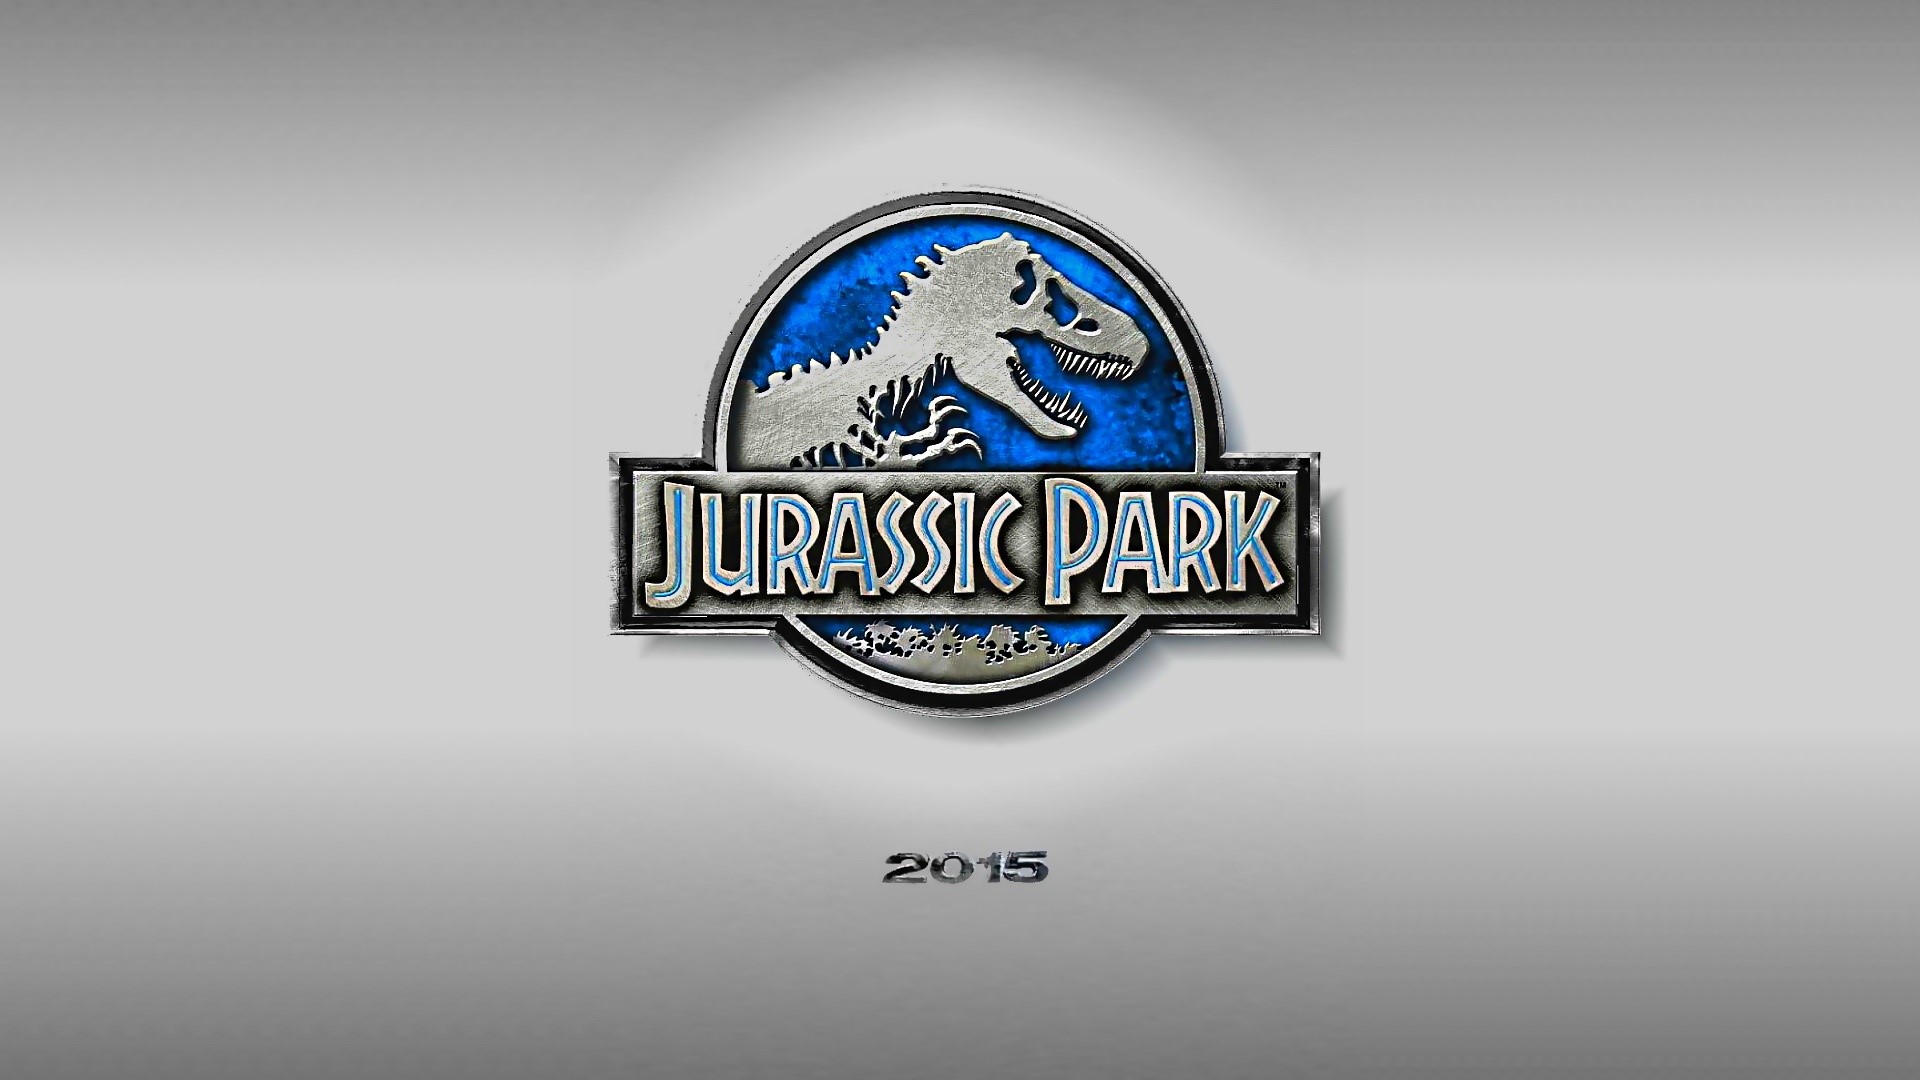 Jurassic park 4 Wallpaper Full HD ID:839